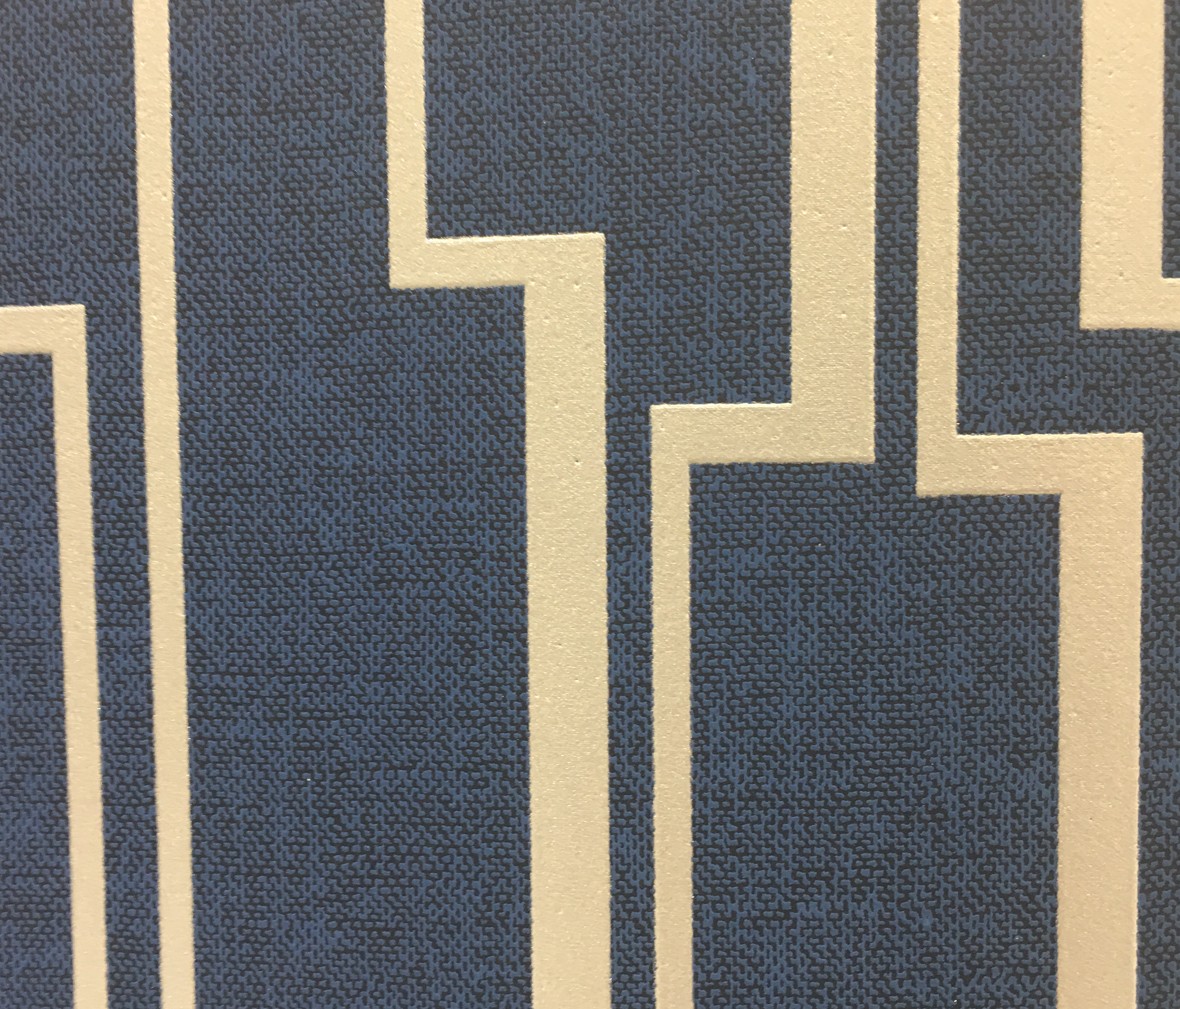 格莱美壁纸 苏黎世系列1821202型号 进口环保纯纸墙纸 细节